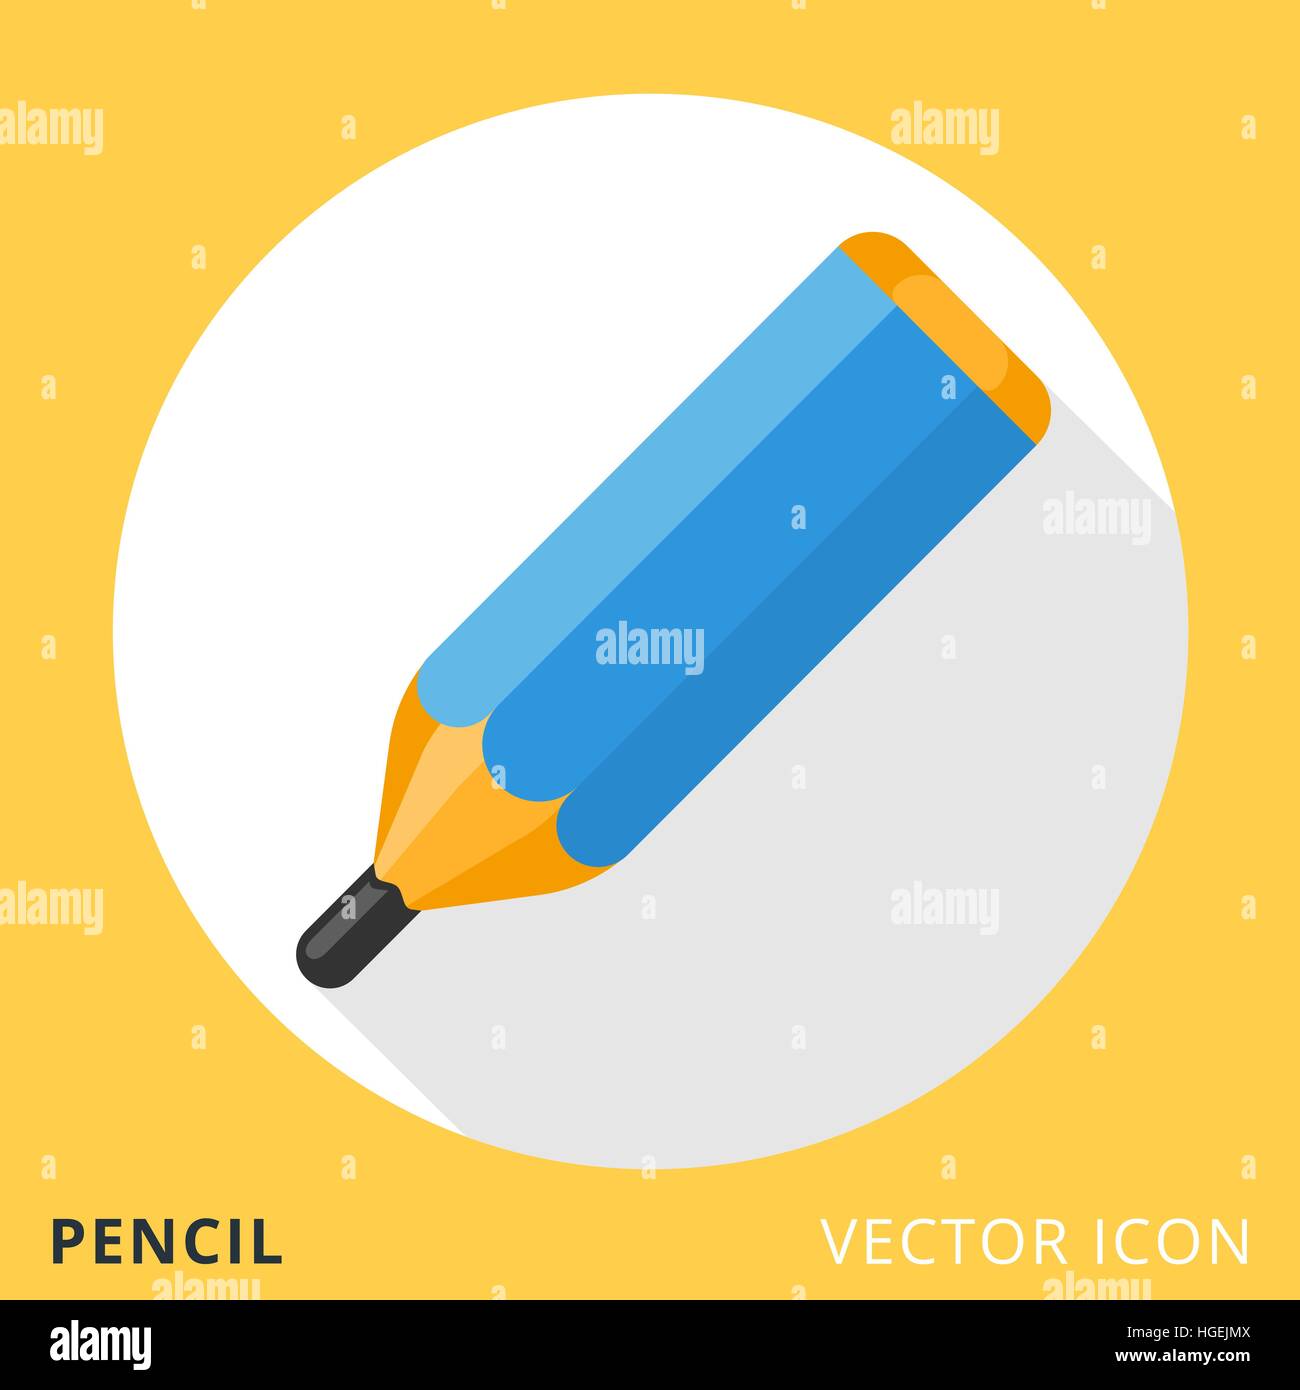 Pencil Flat Vector Icon Stock Vector